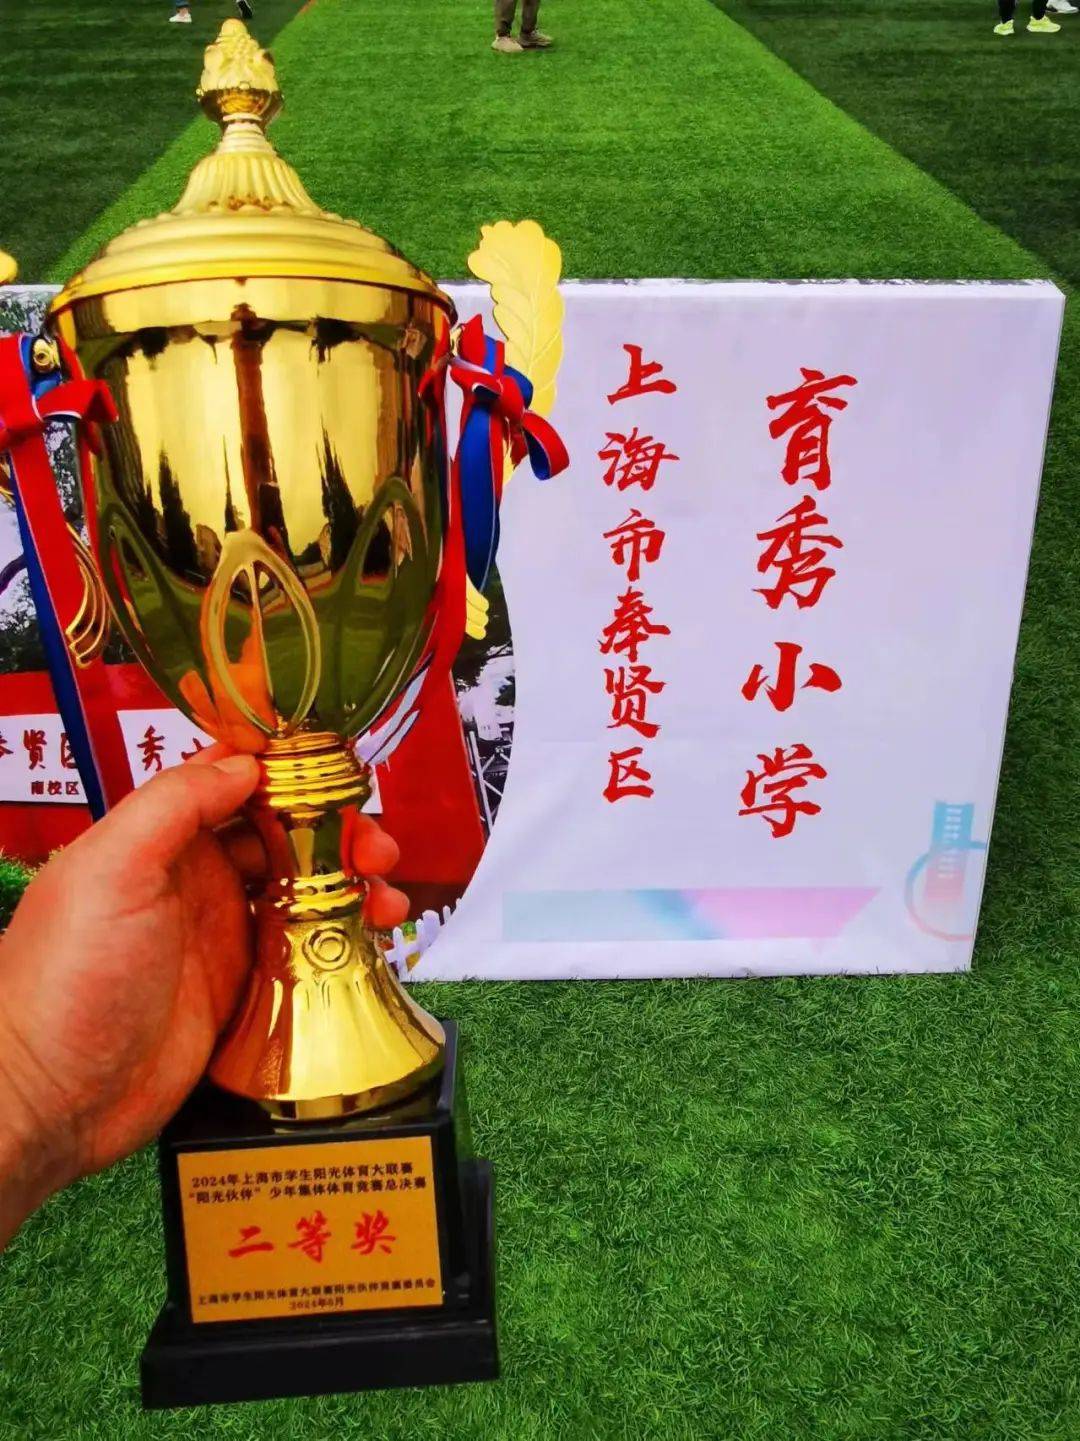 大联赛阳光伙伴少年集体体育竞赛总决赛在上海市杨思中学顺利举行